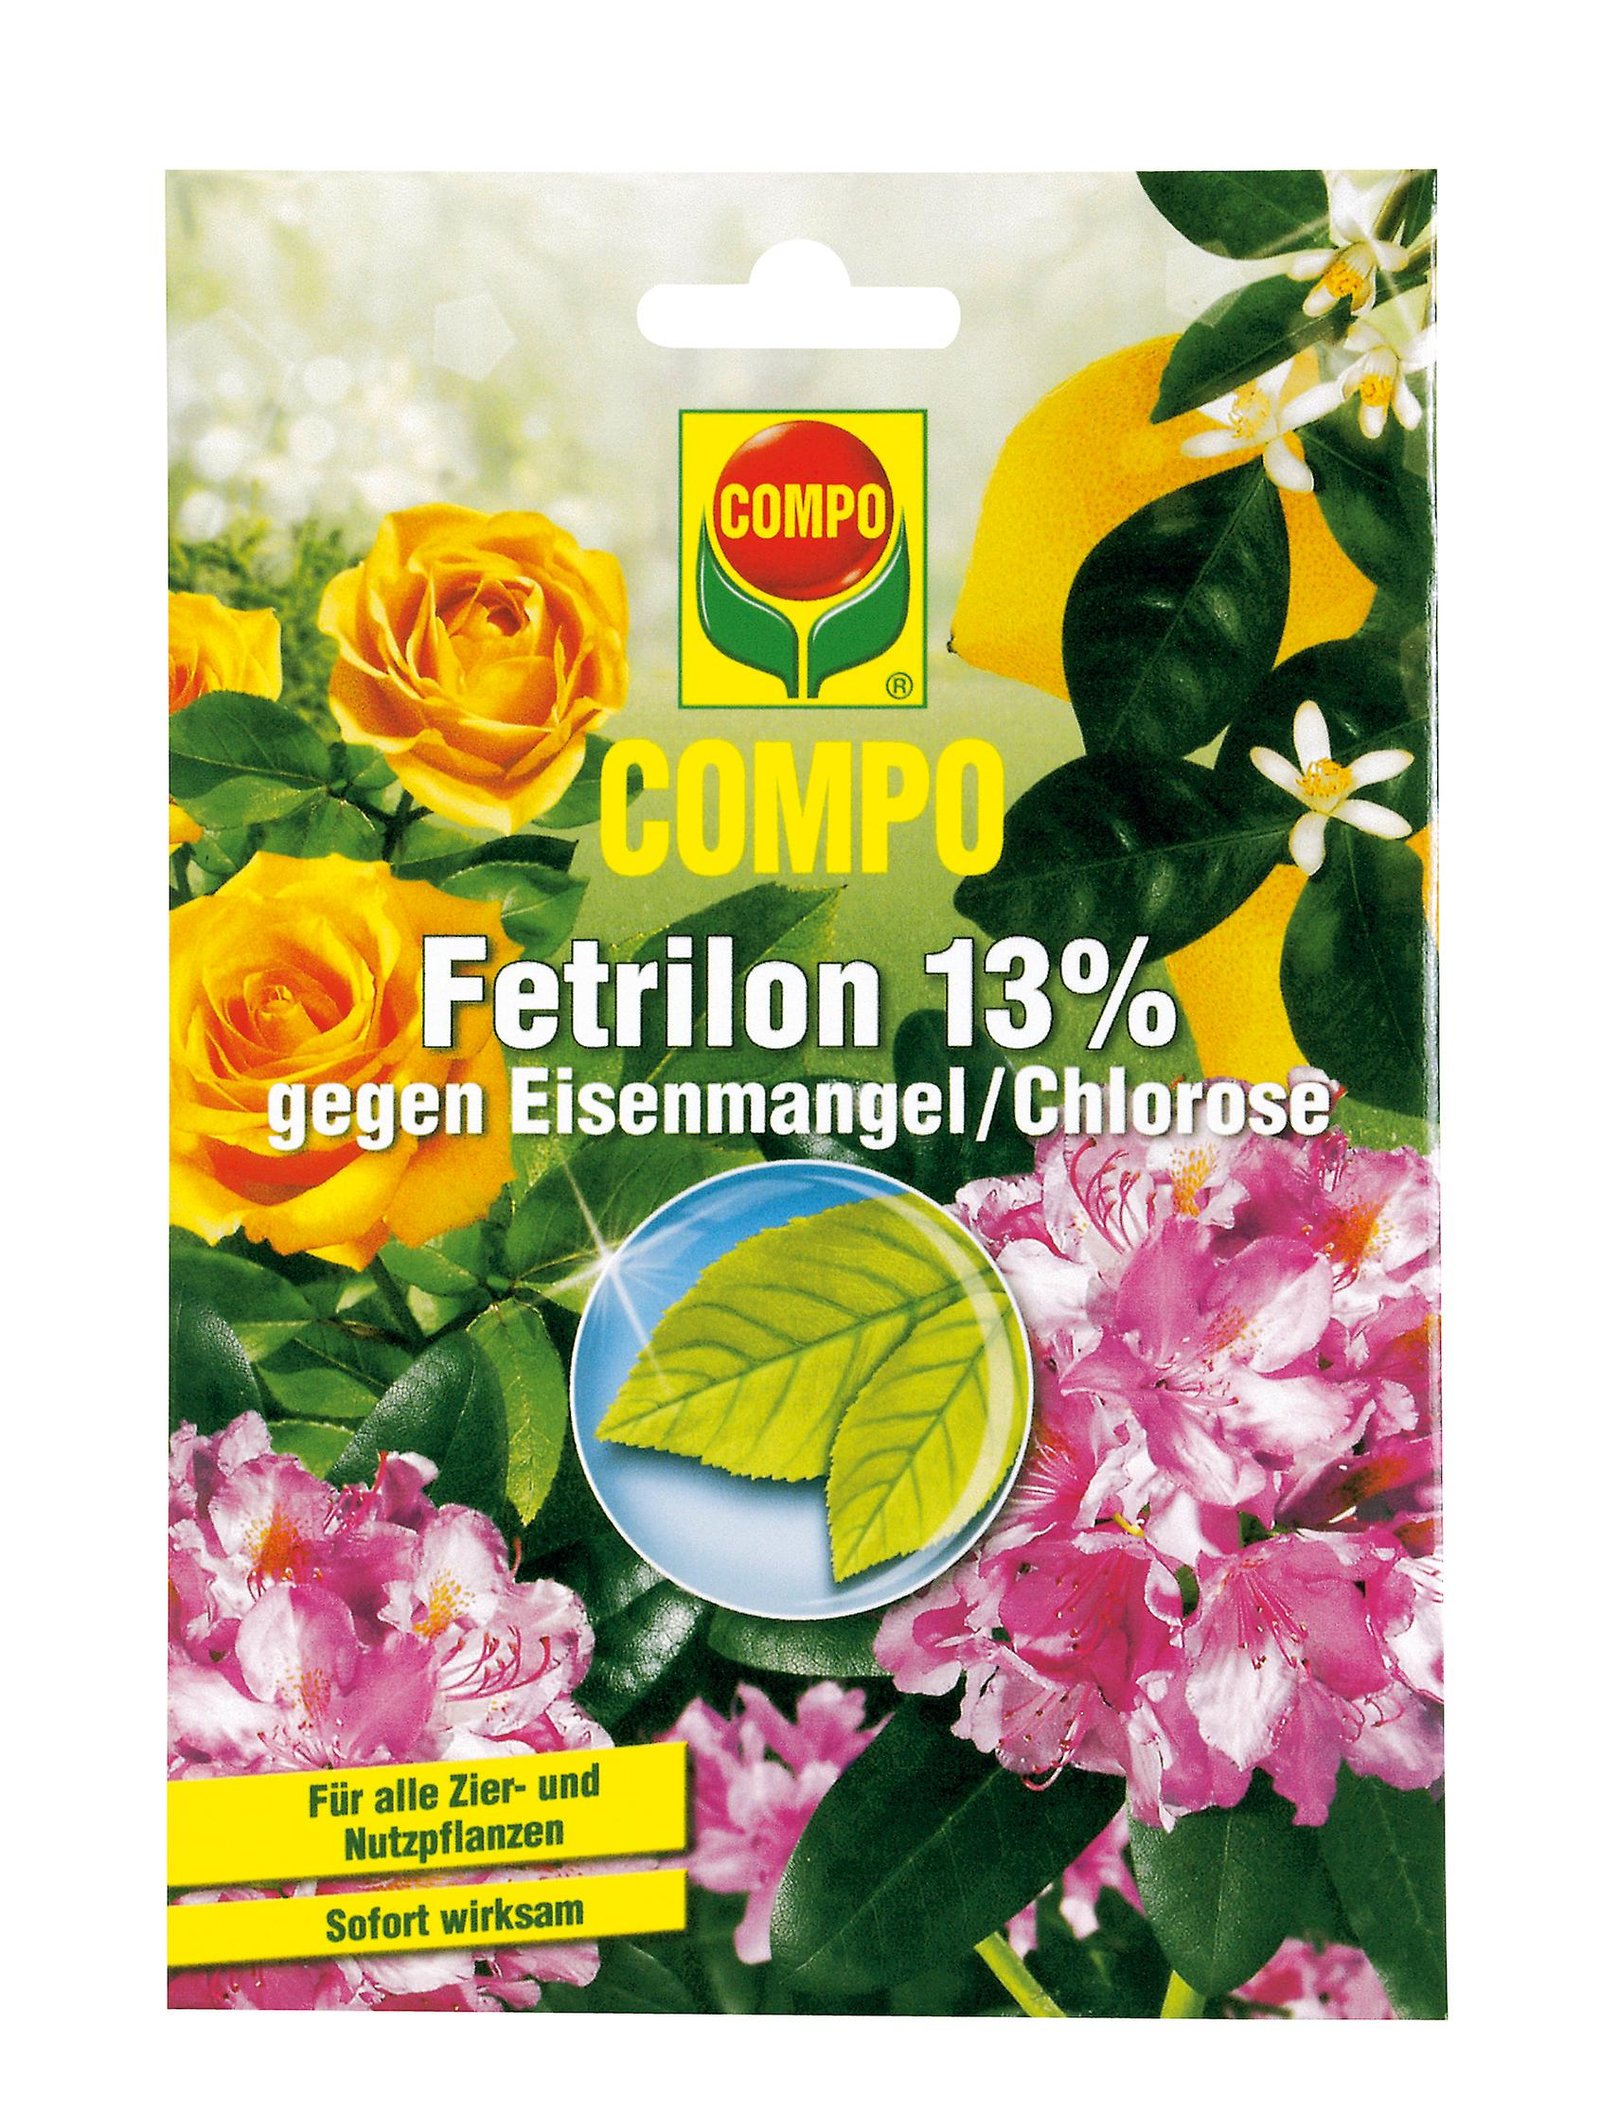 COMPO Fertilon 13% 2,99ευρω